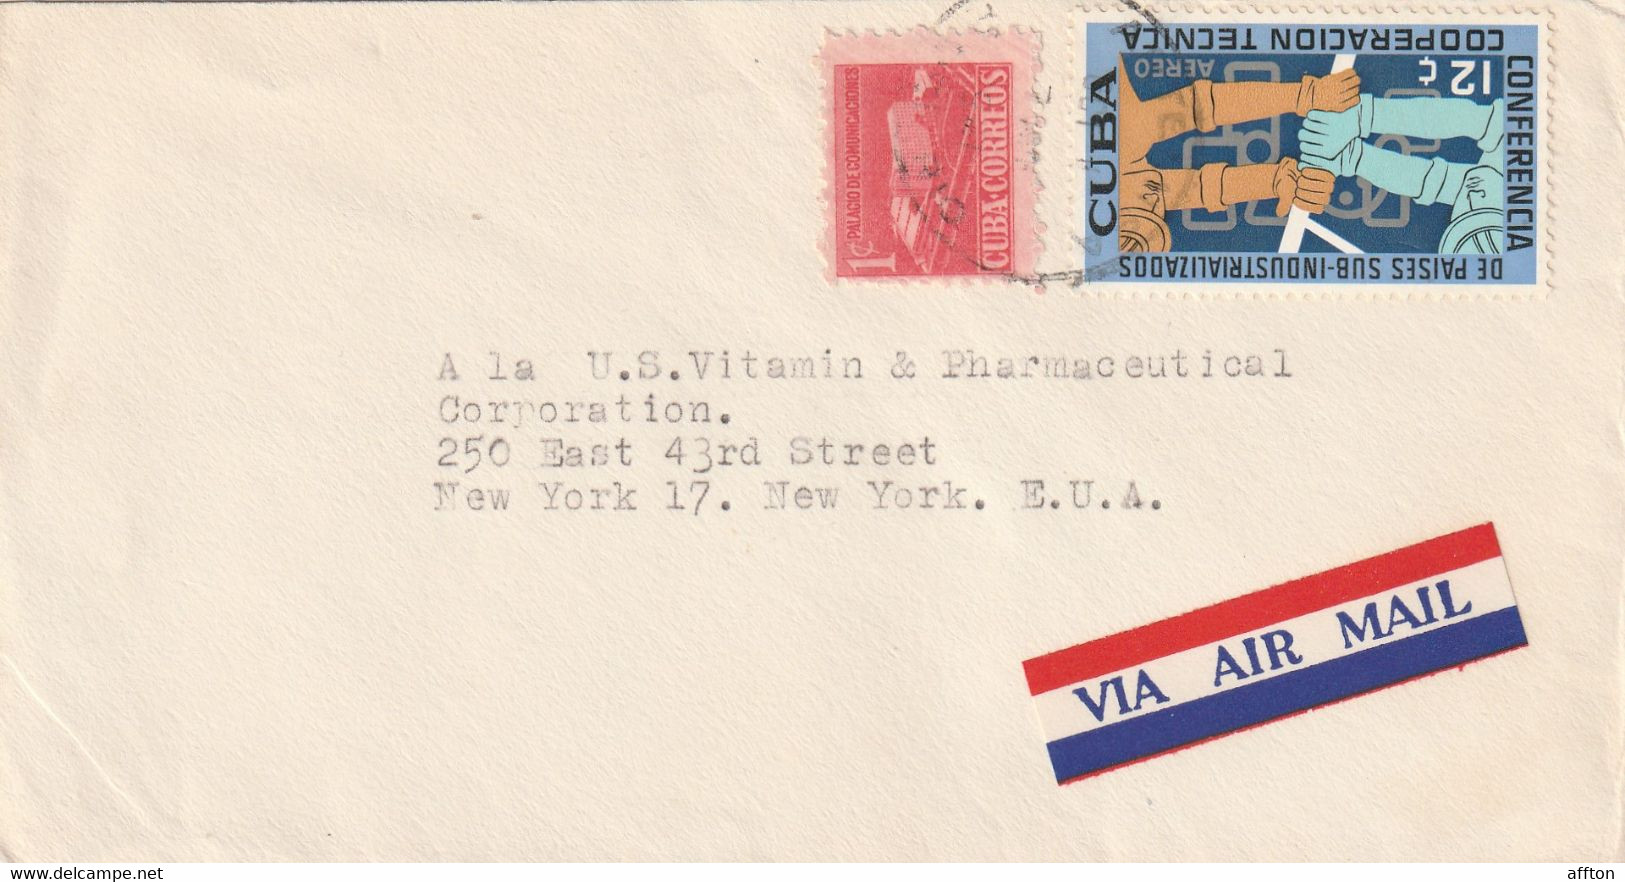 Havana Cuba 1961 Cover Mailed - Briefe U. Dokumente